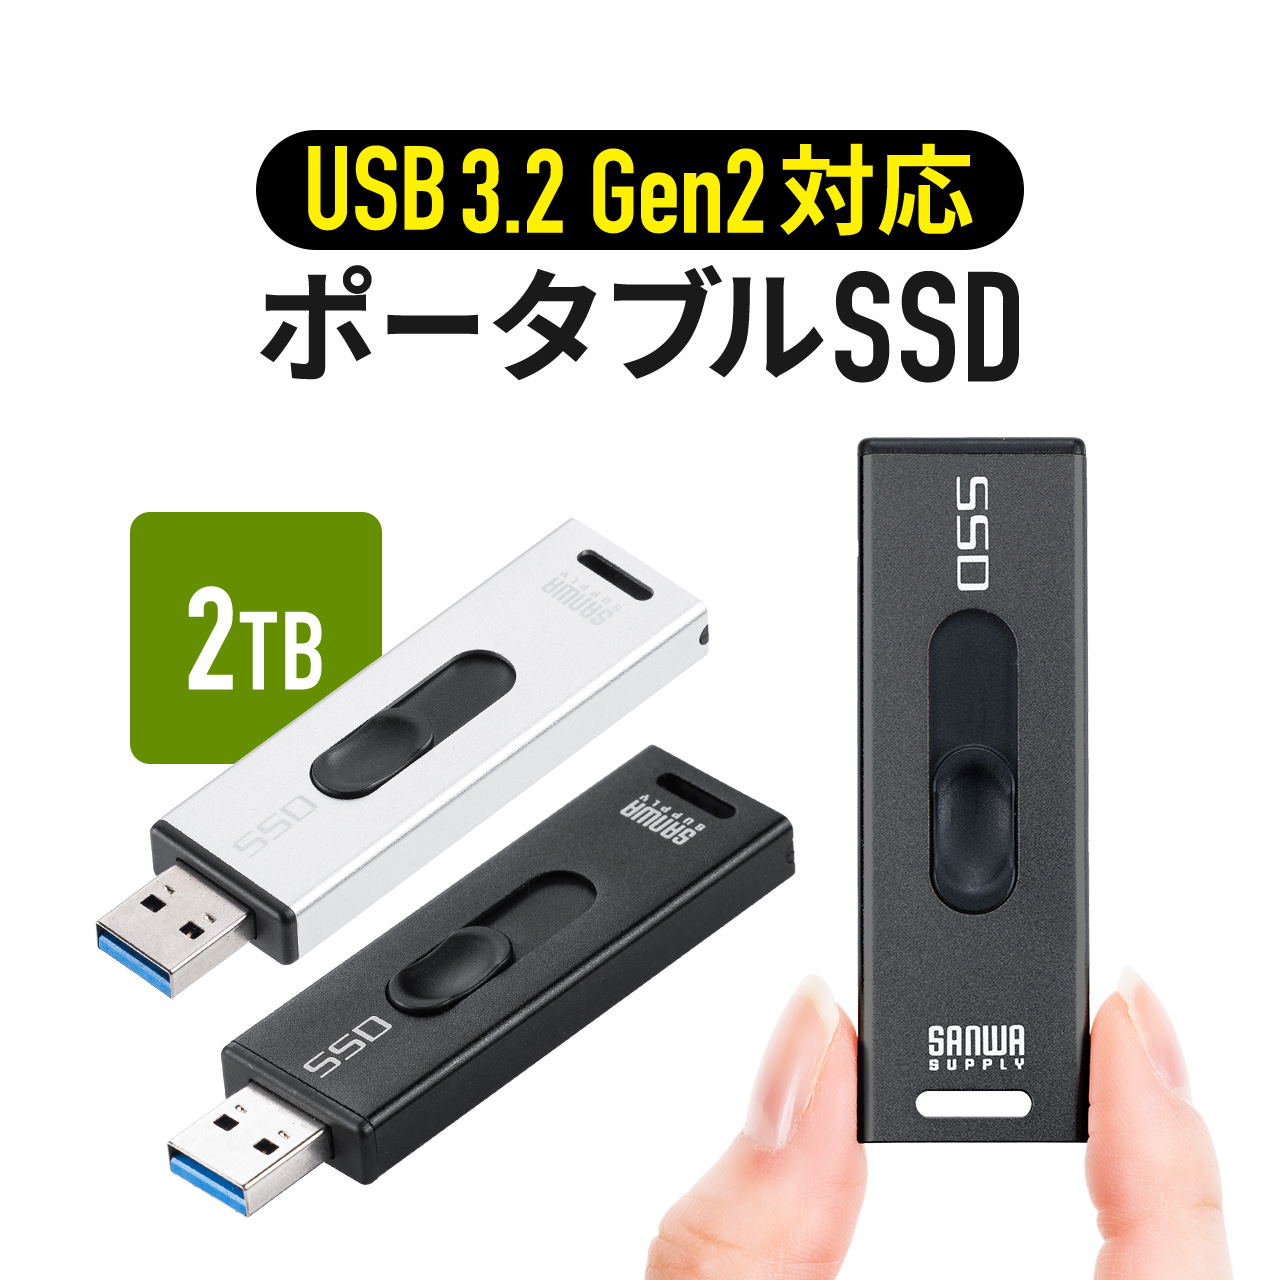 ポータブル SSD 2TB 外付け スティック型 USB3.2 Gen2 小型 テレビ 録画 ゲーム機 PS5 PS4 Xbox Series X スライド式 直挿し シルバー